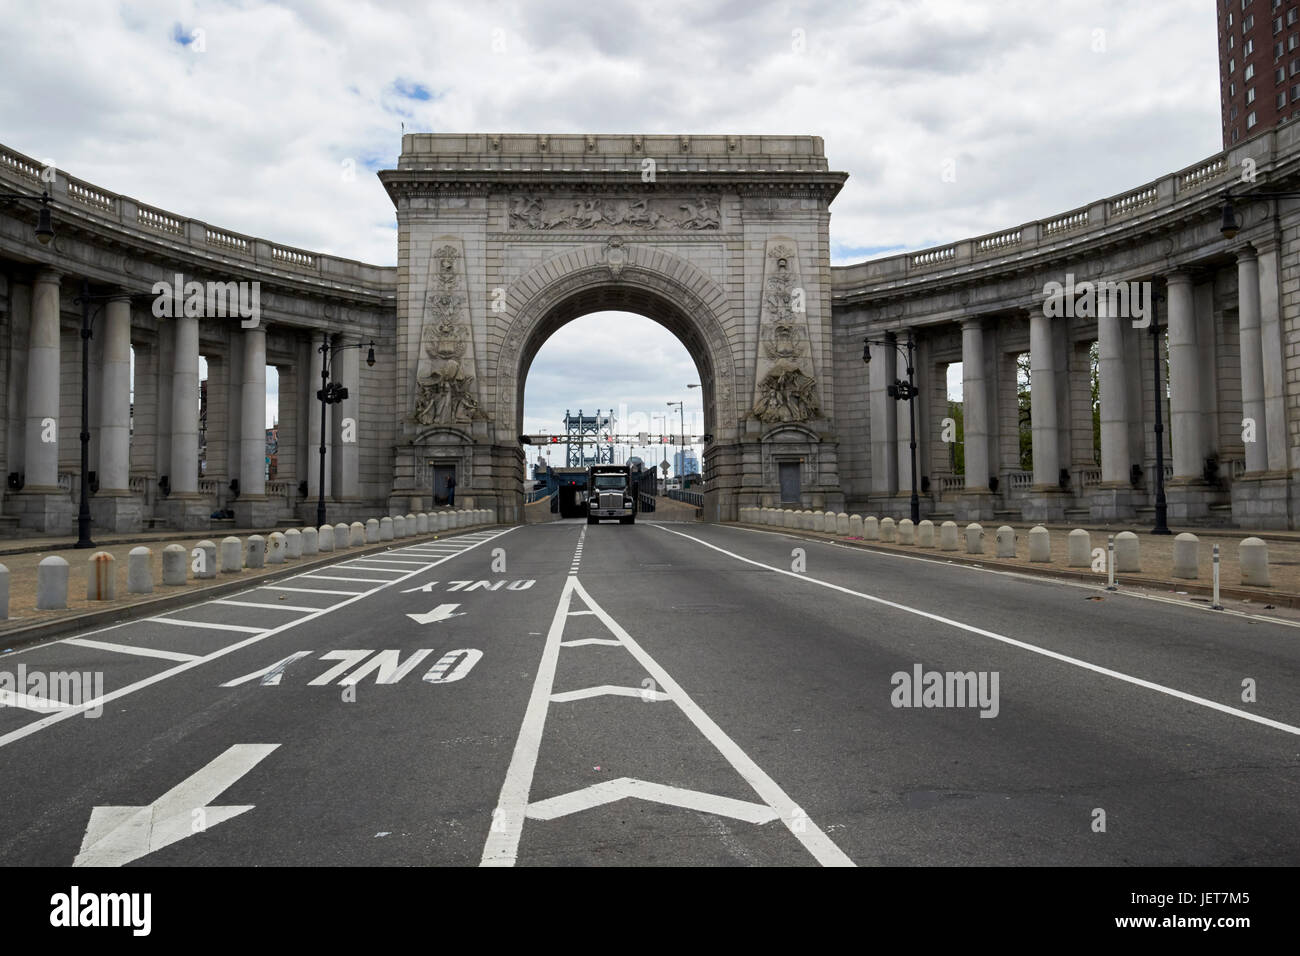 La guida di automezzi pesanti attraverso manhattan bridge archway approccio al bridge New York City USA Foto Stock